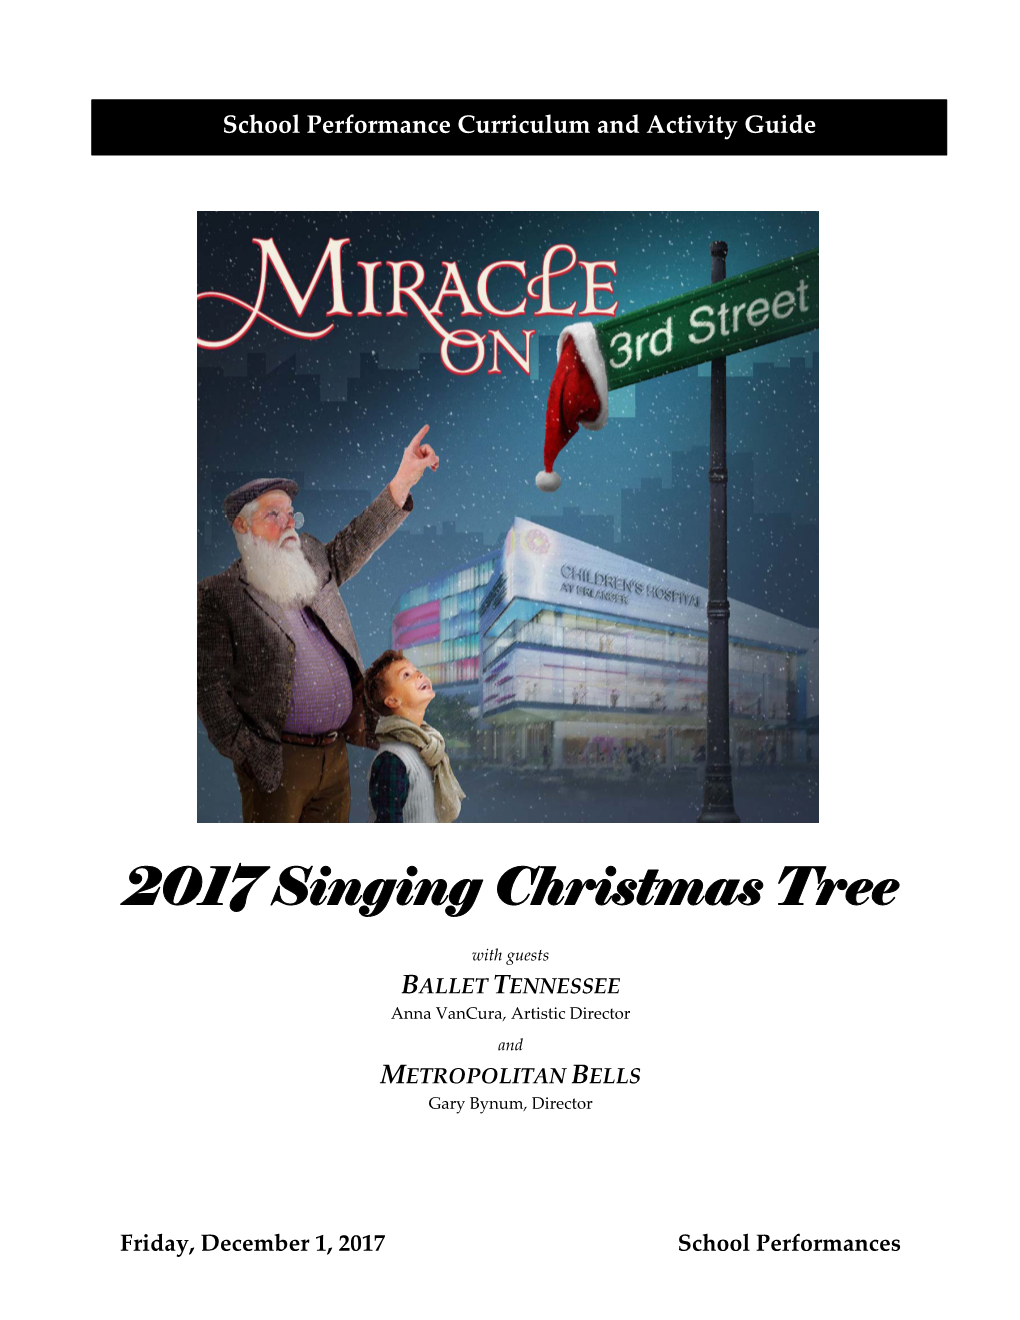 2017 Singing Christmas Tree